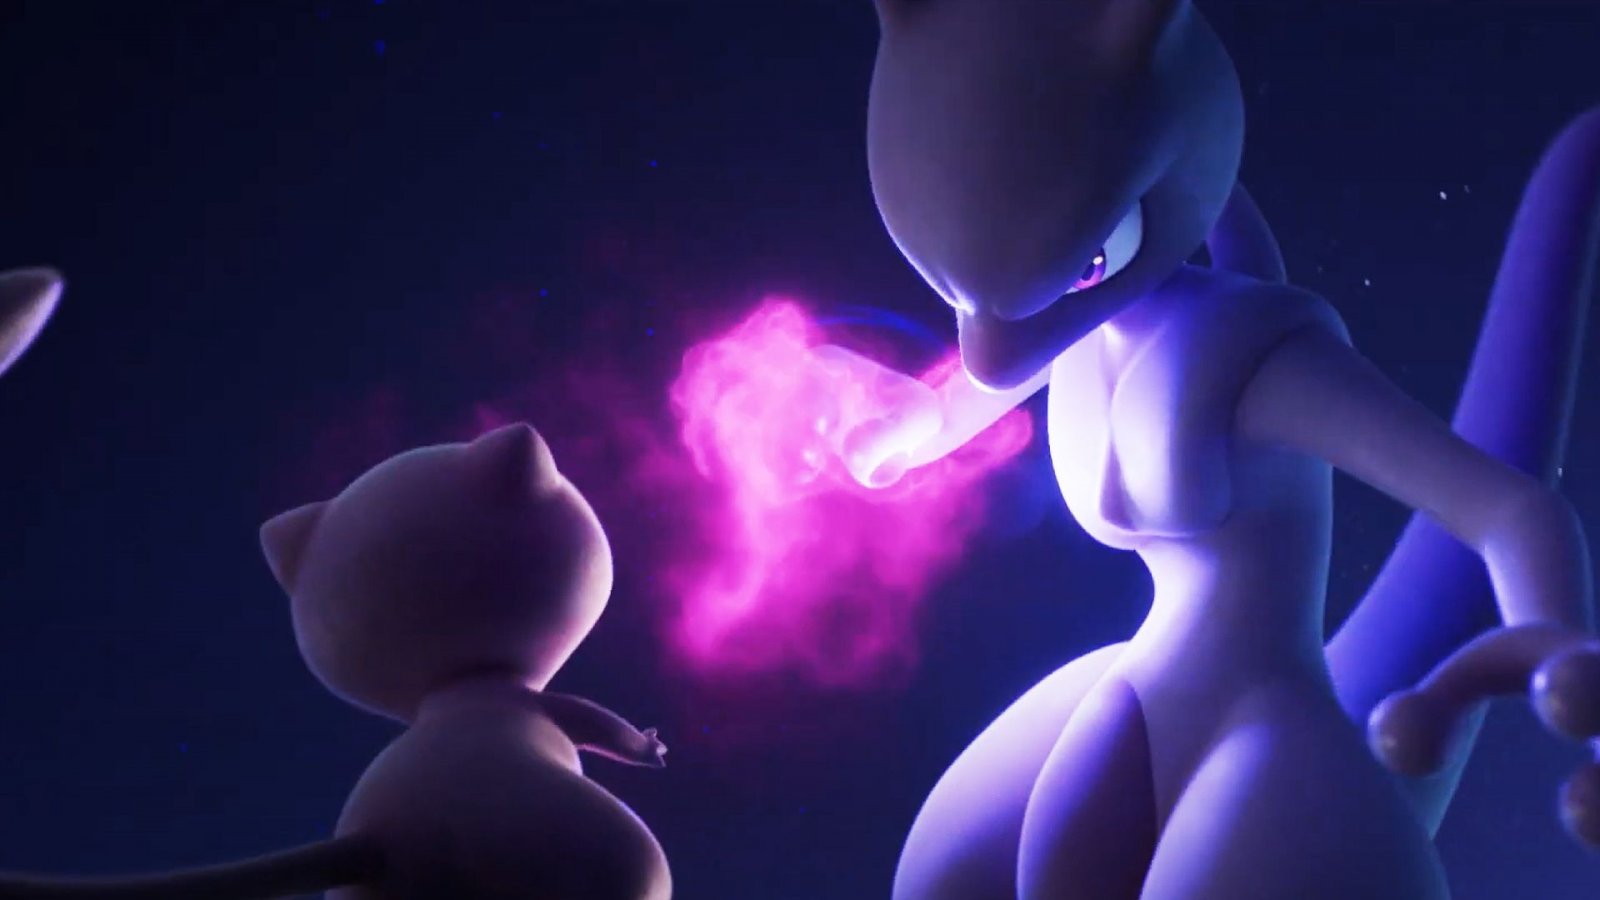 Pokémon Scarlatto e Violetto, il codice per ottenere Mew nel trailer con Mewtwo